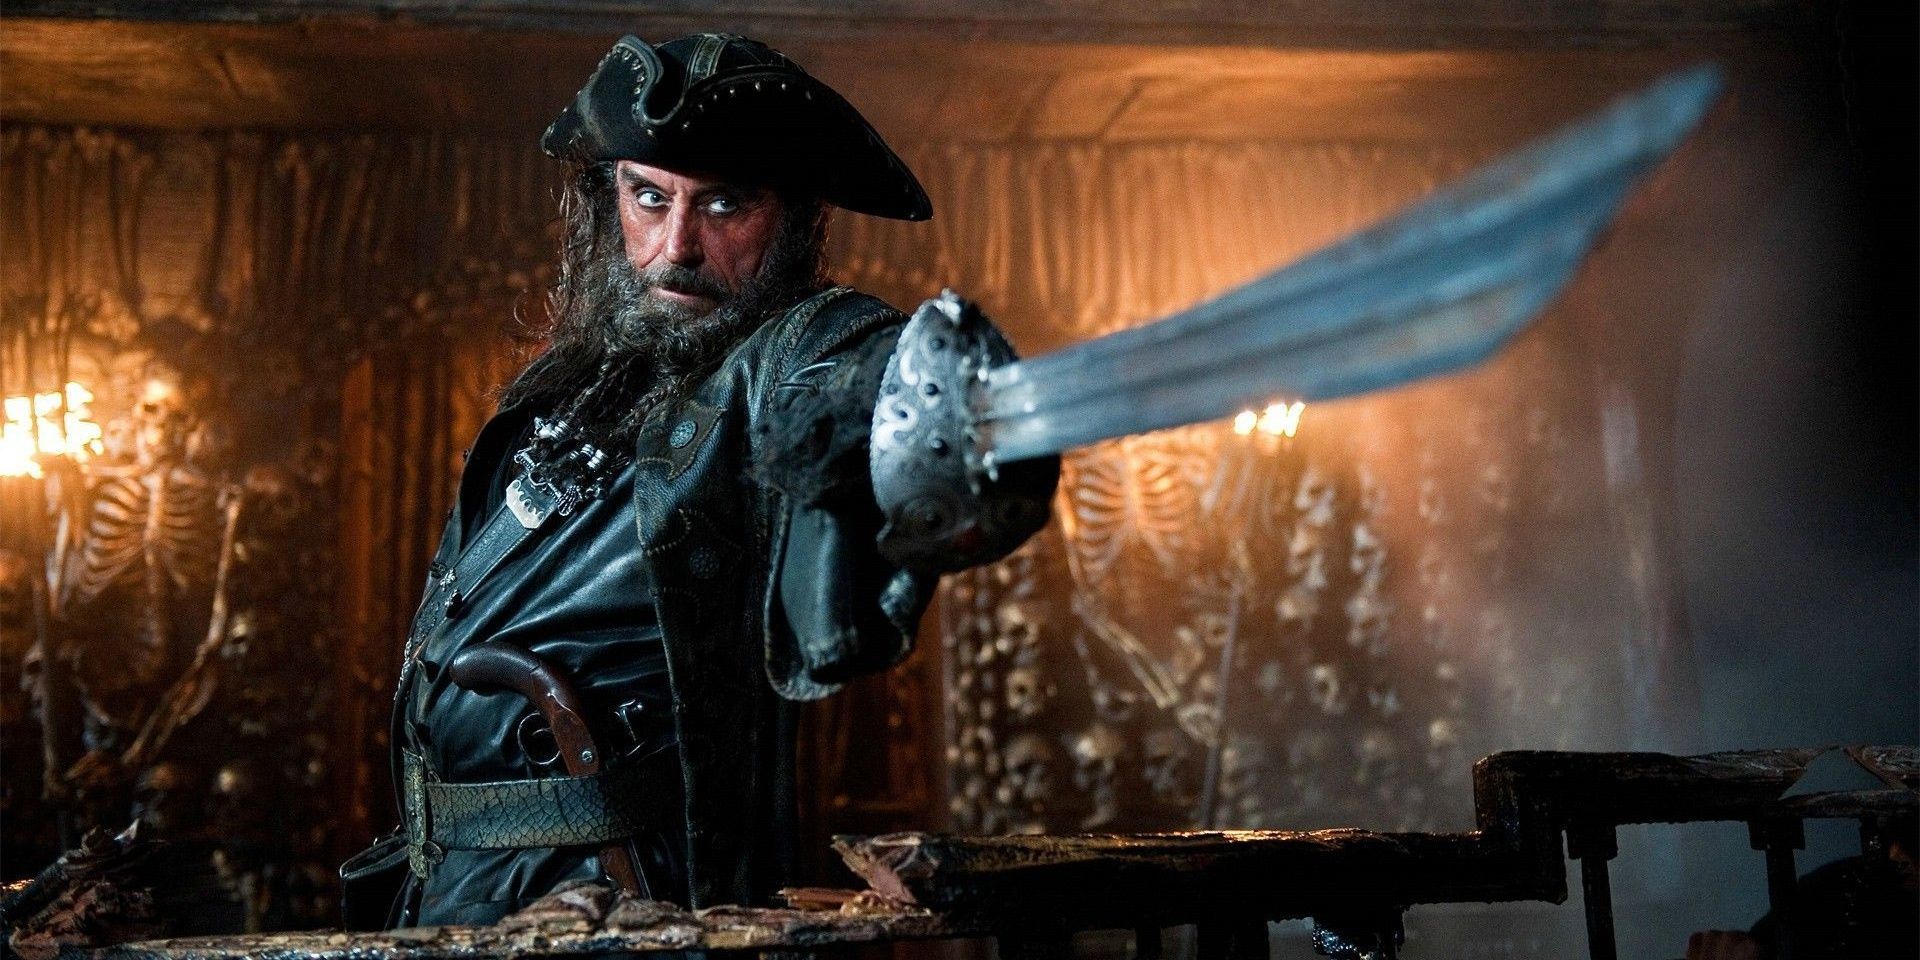 Blackbeard holding the Sword of Triton in Stranger Tides